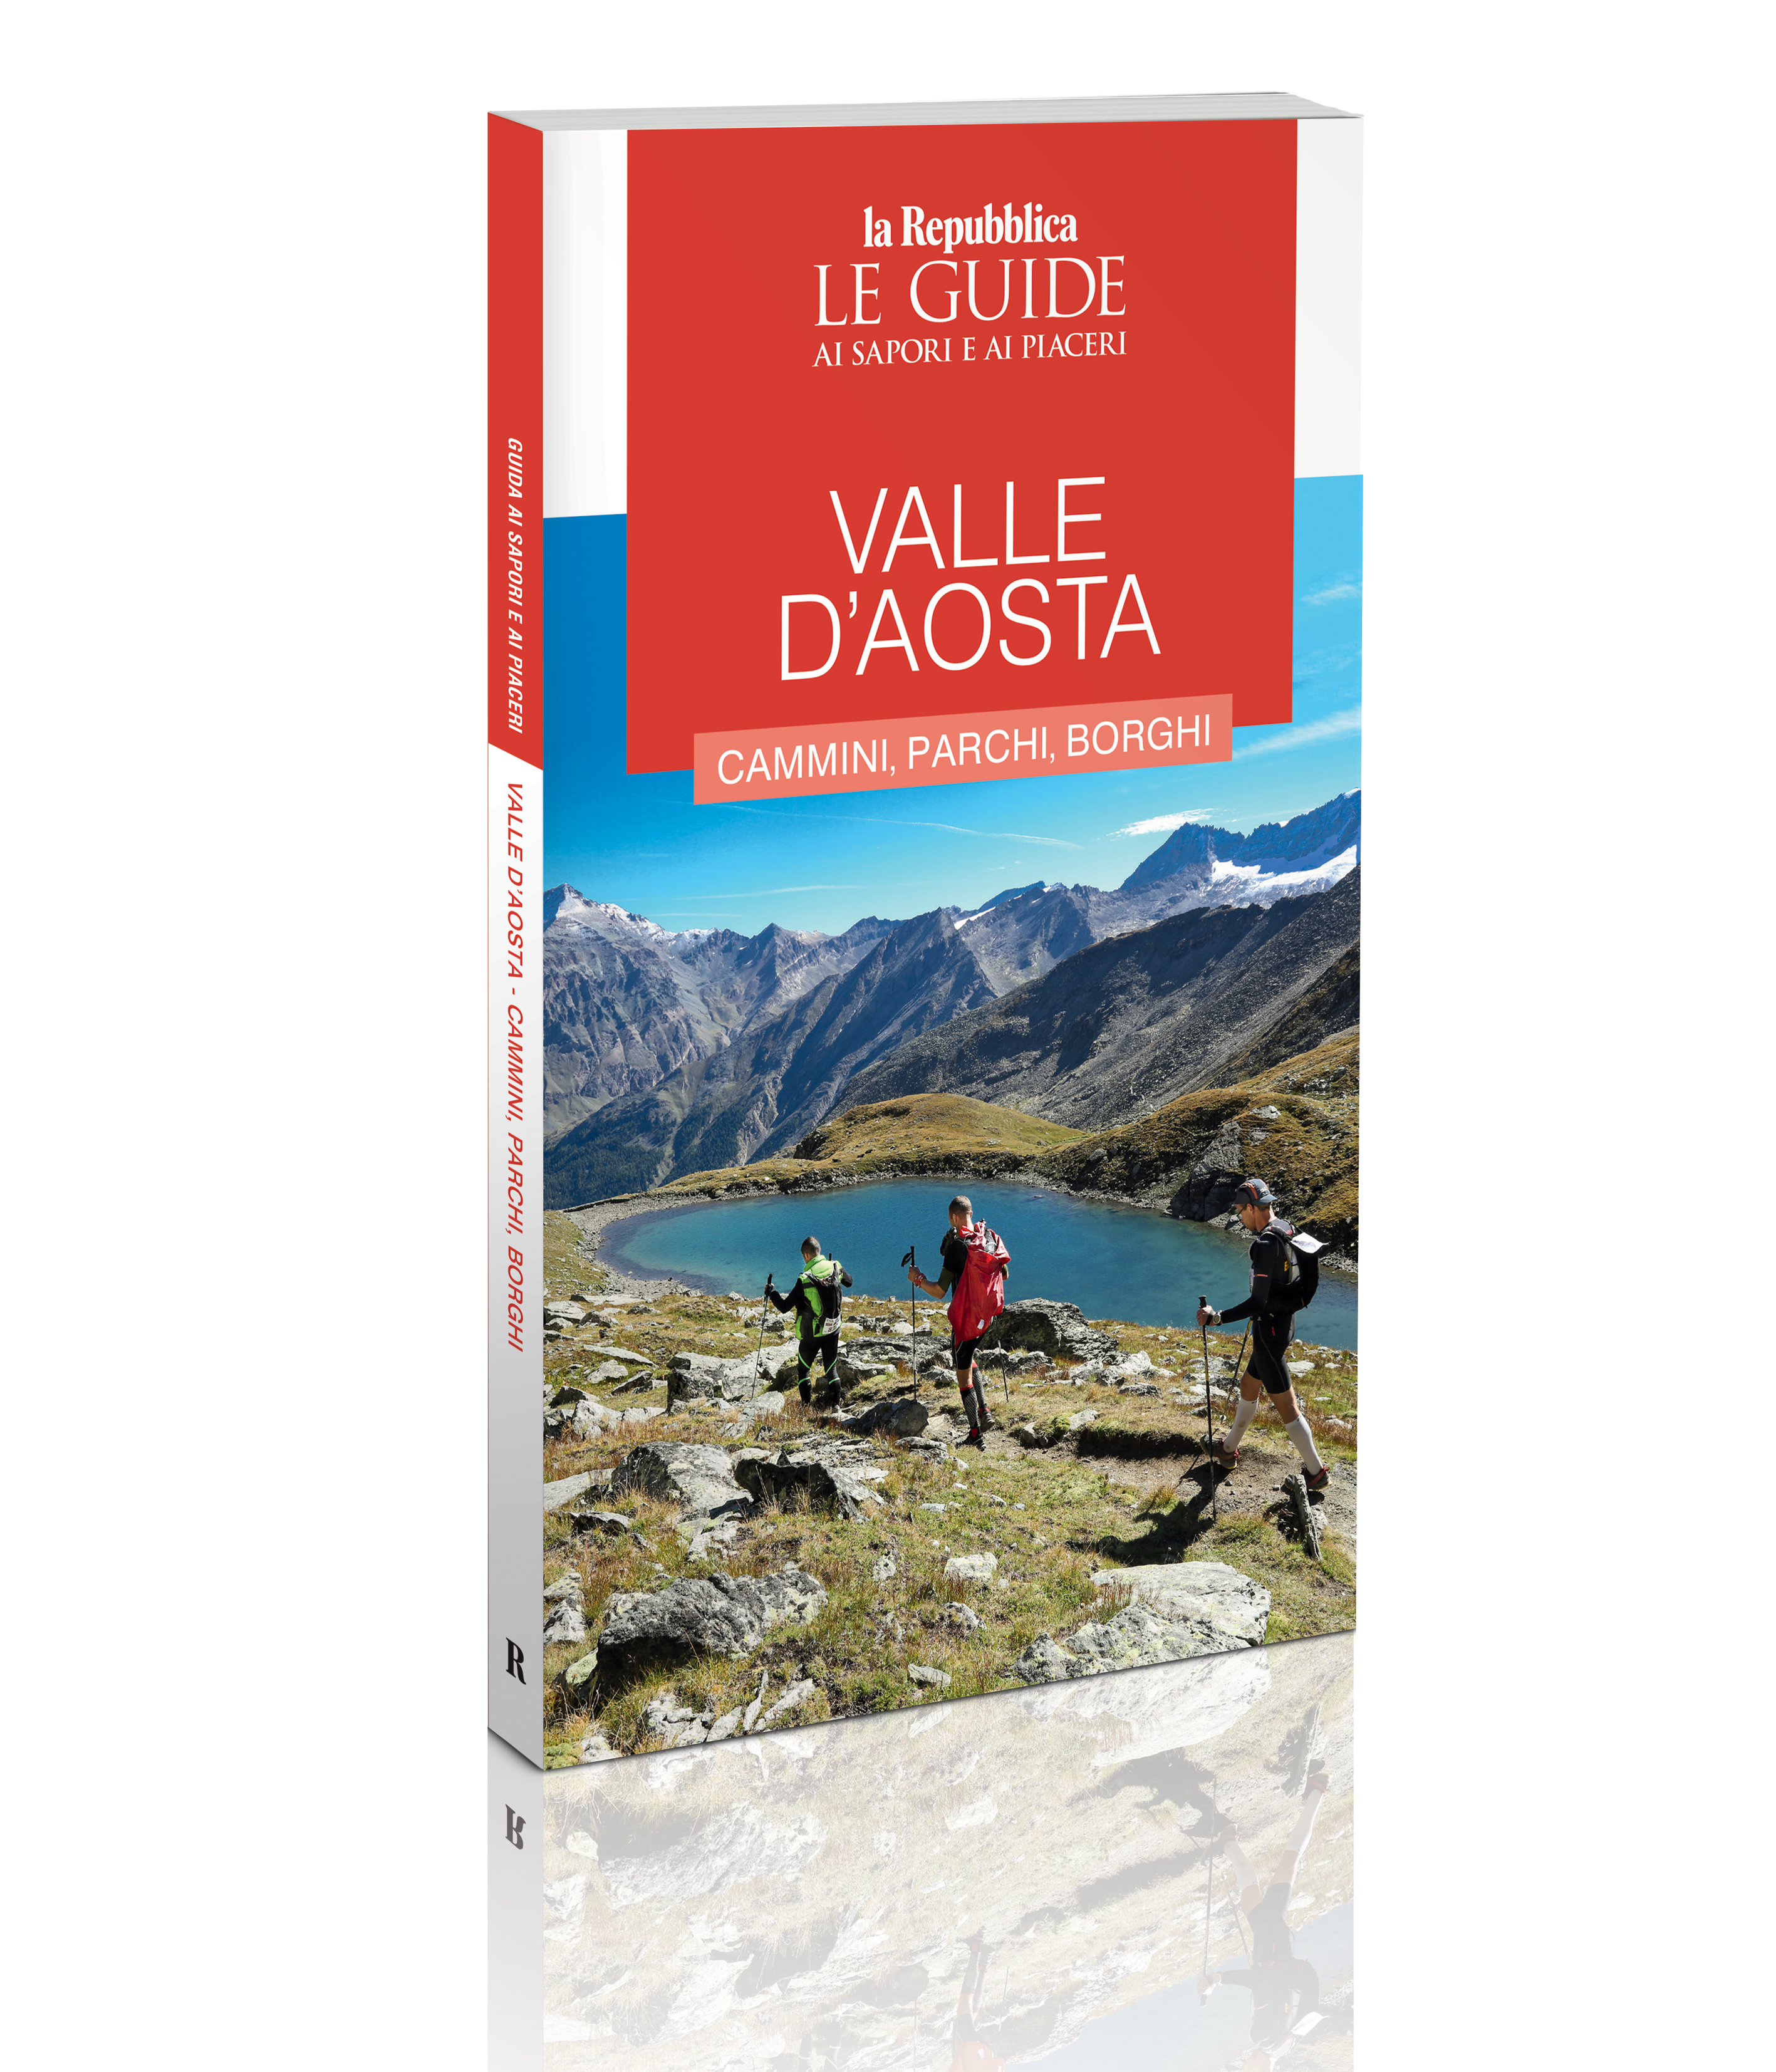 Les Crêtes @Guide di Repubblica – Valle d’Aosta